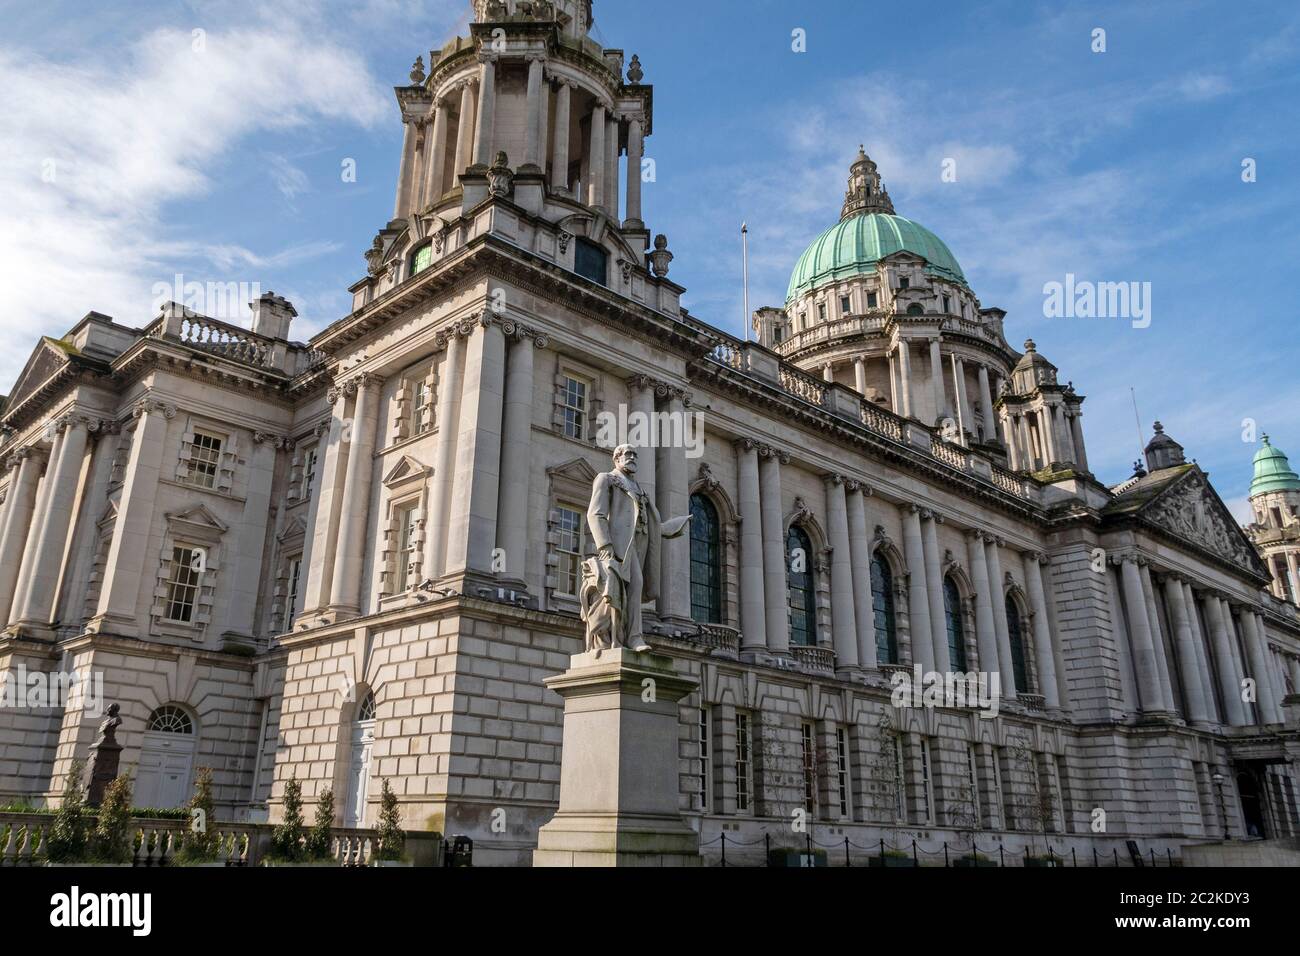 Statue of James Horner Haslett in front of the Belfast City Hall in Belfast, Northern Ireland, UK, Europe Stock Photo